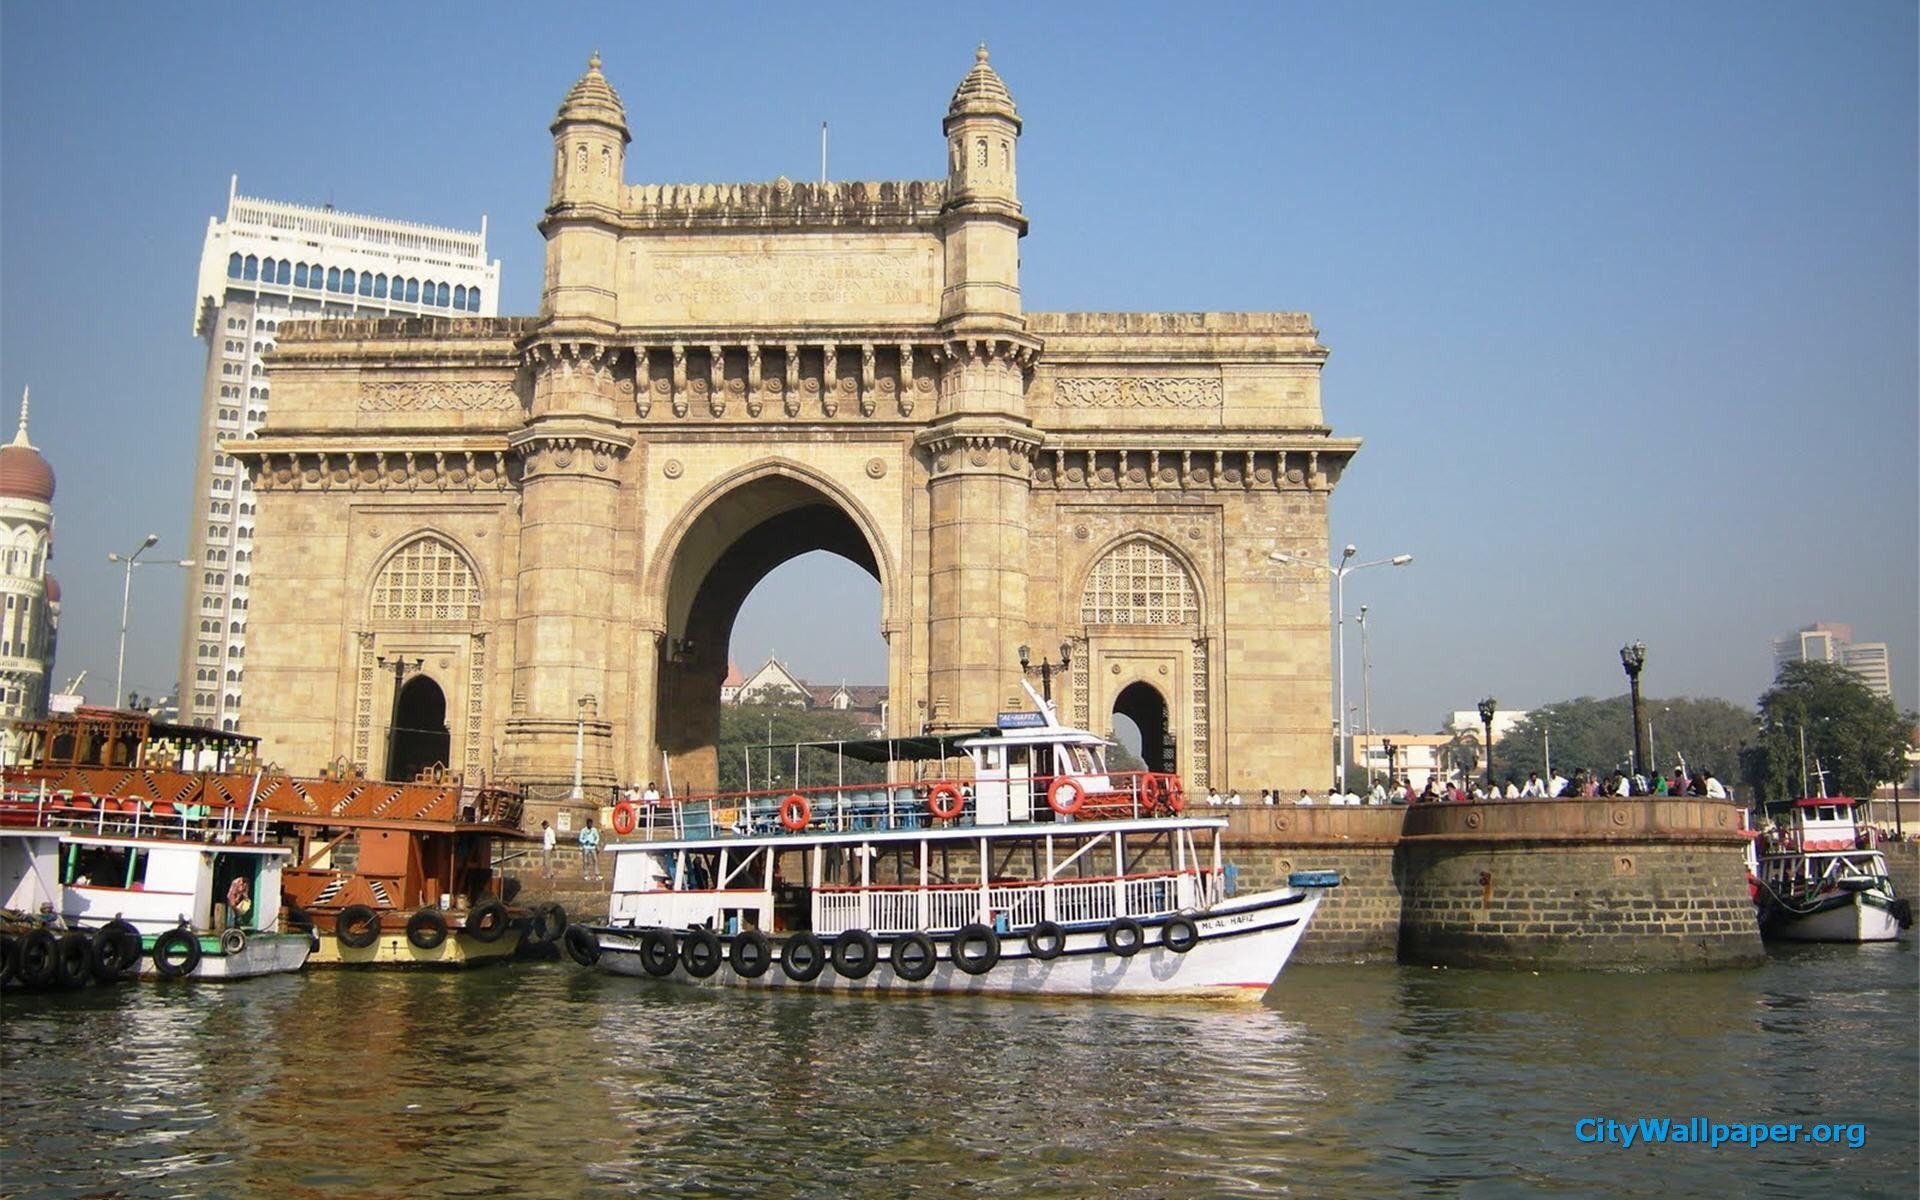 mumbai city wallpaper,ponte ad arco,corso d'acqua,architettura,turismo,costruzione